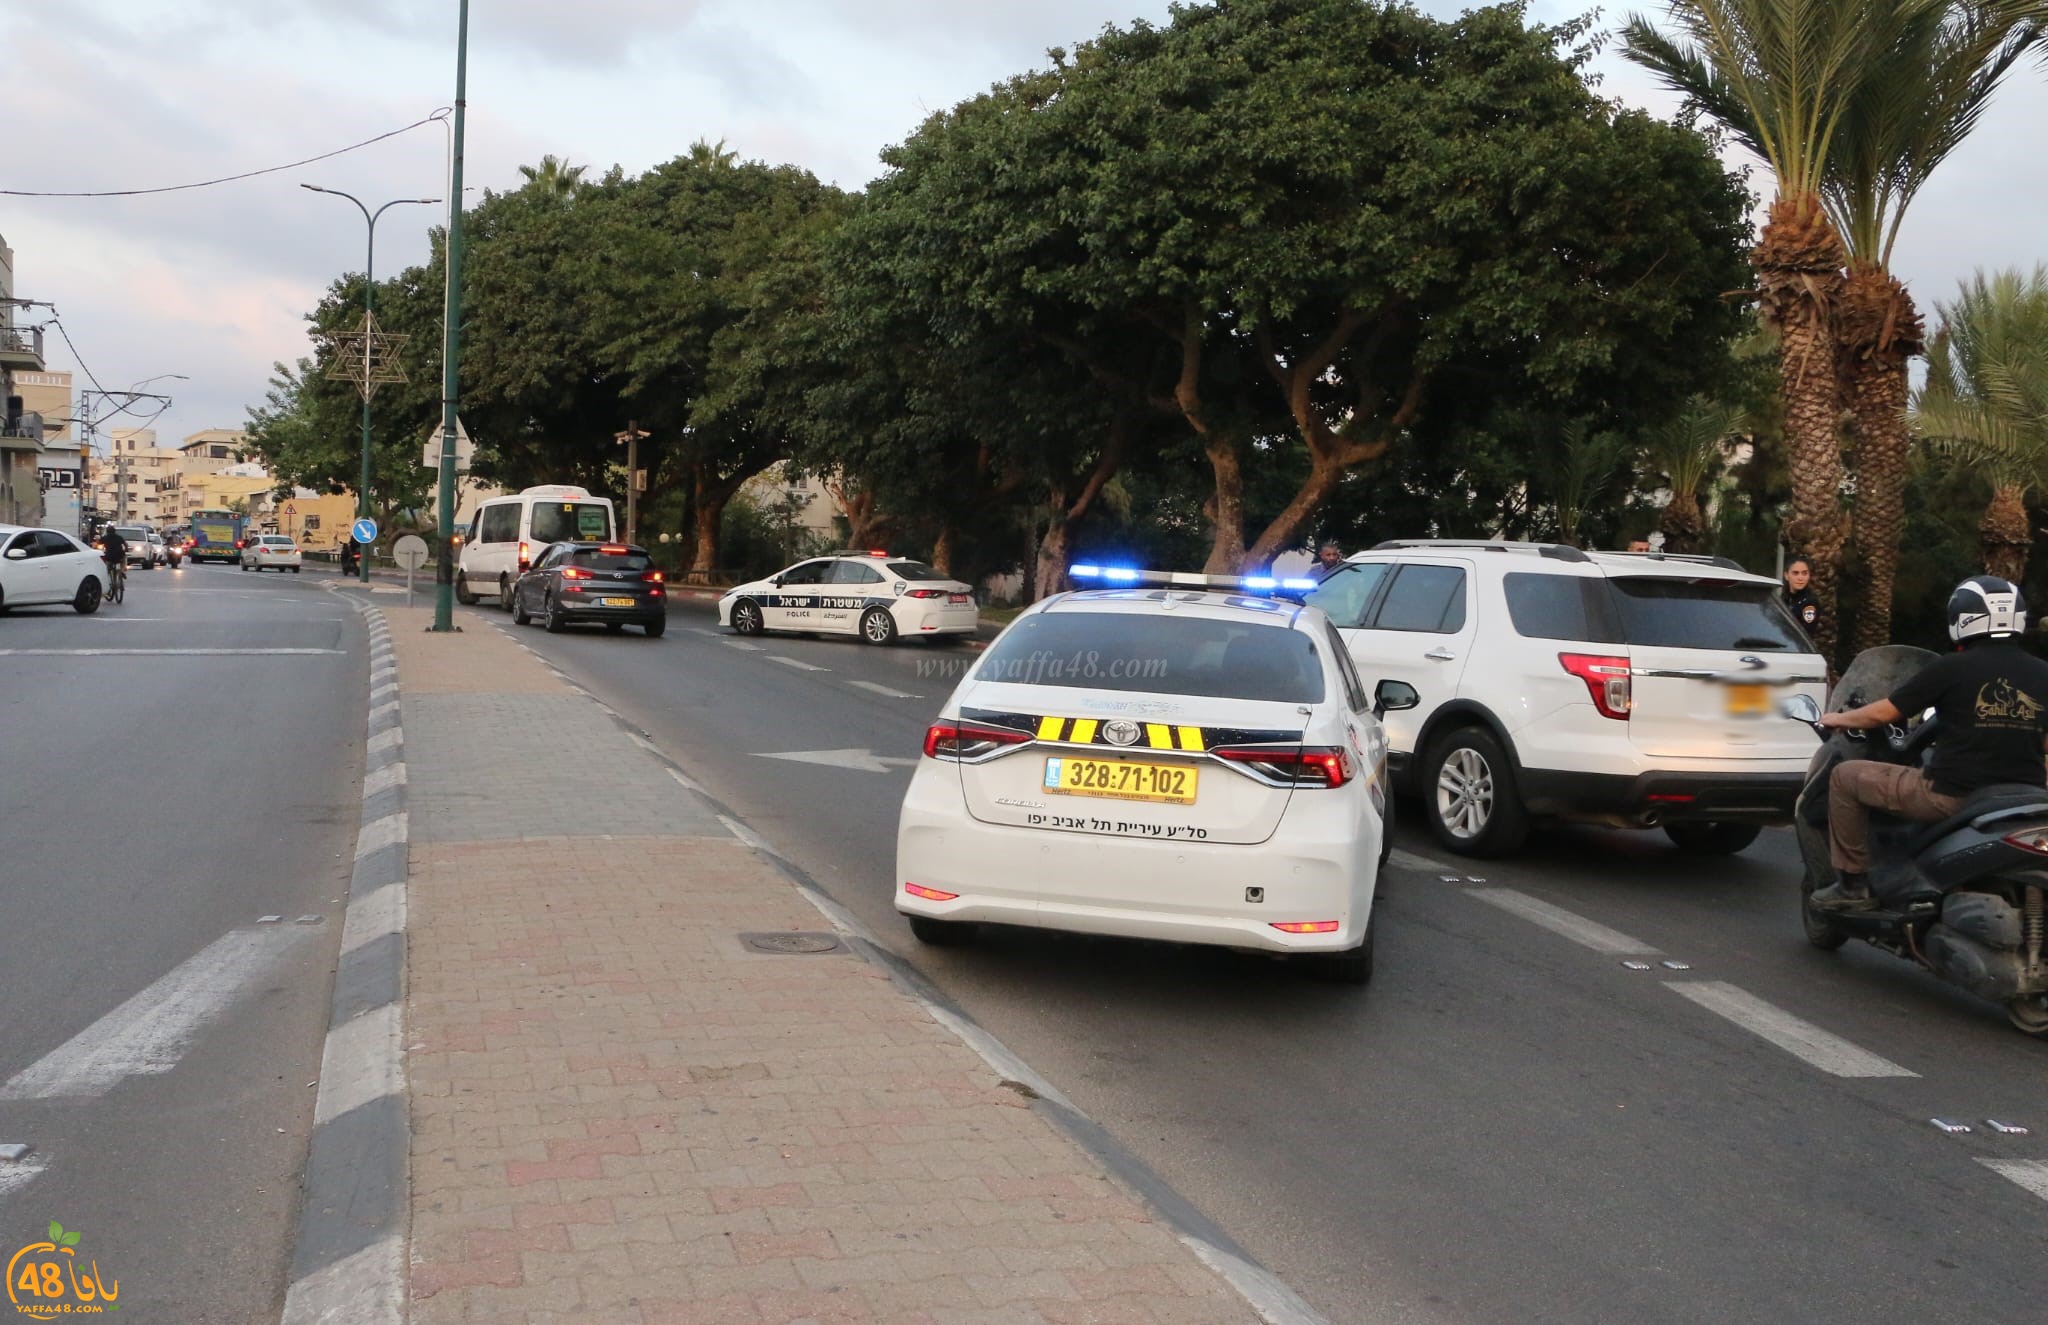  يافا: انتشار مكثّف لشرطة السير في مفترقات المدينة